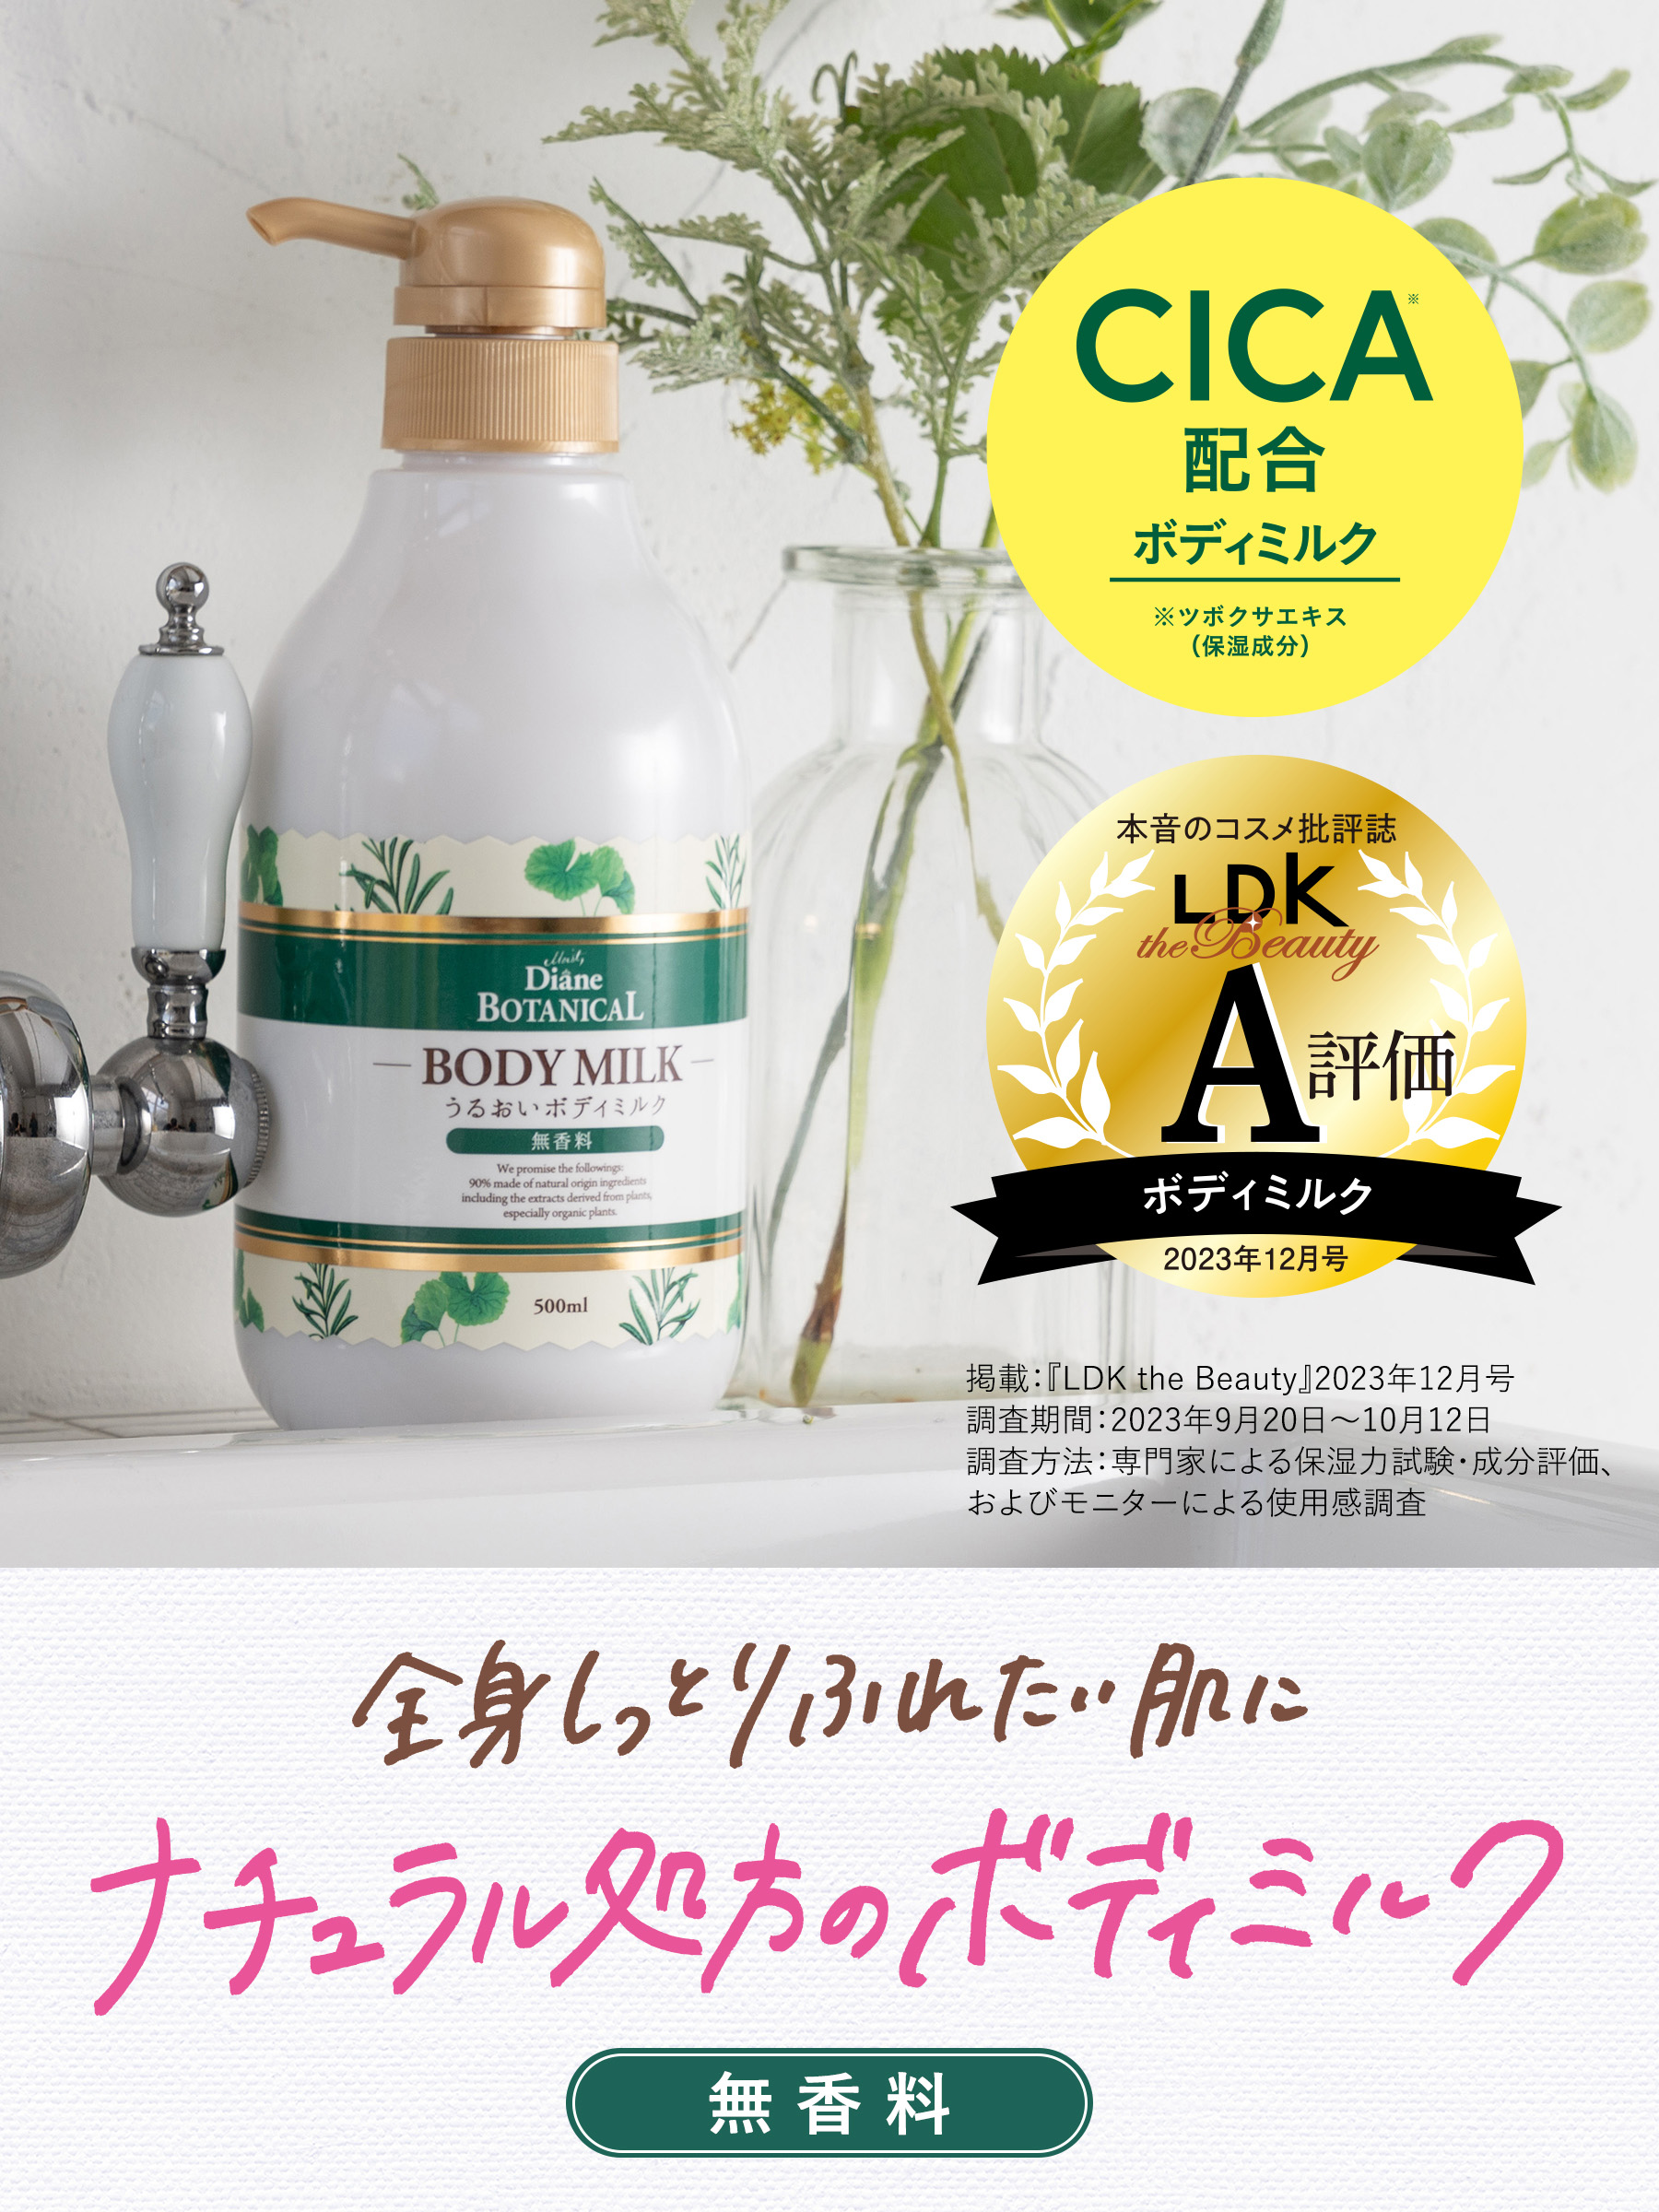 【楽天市場】ダイアンボタニカル ボディミルク 無香料 詰め替え 